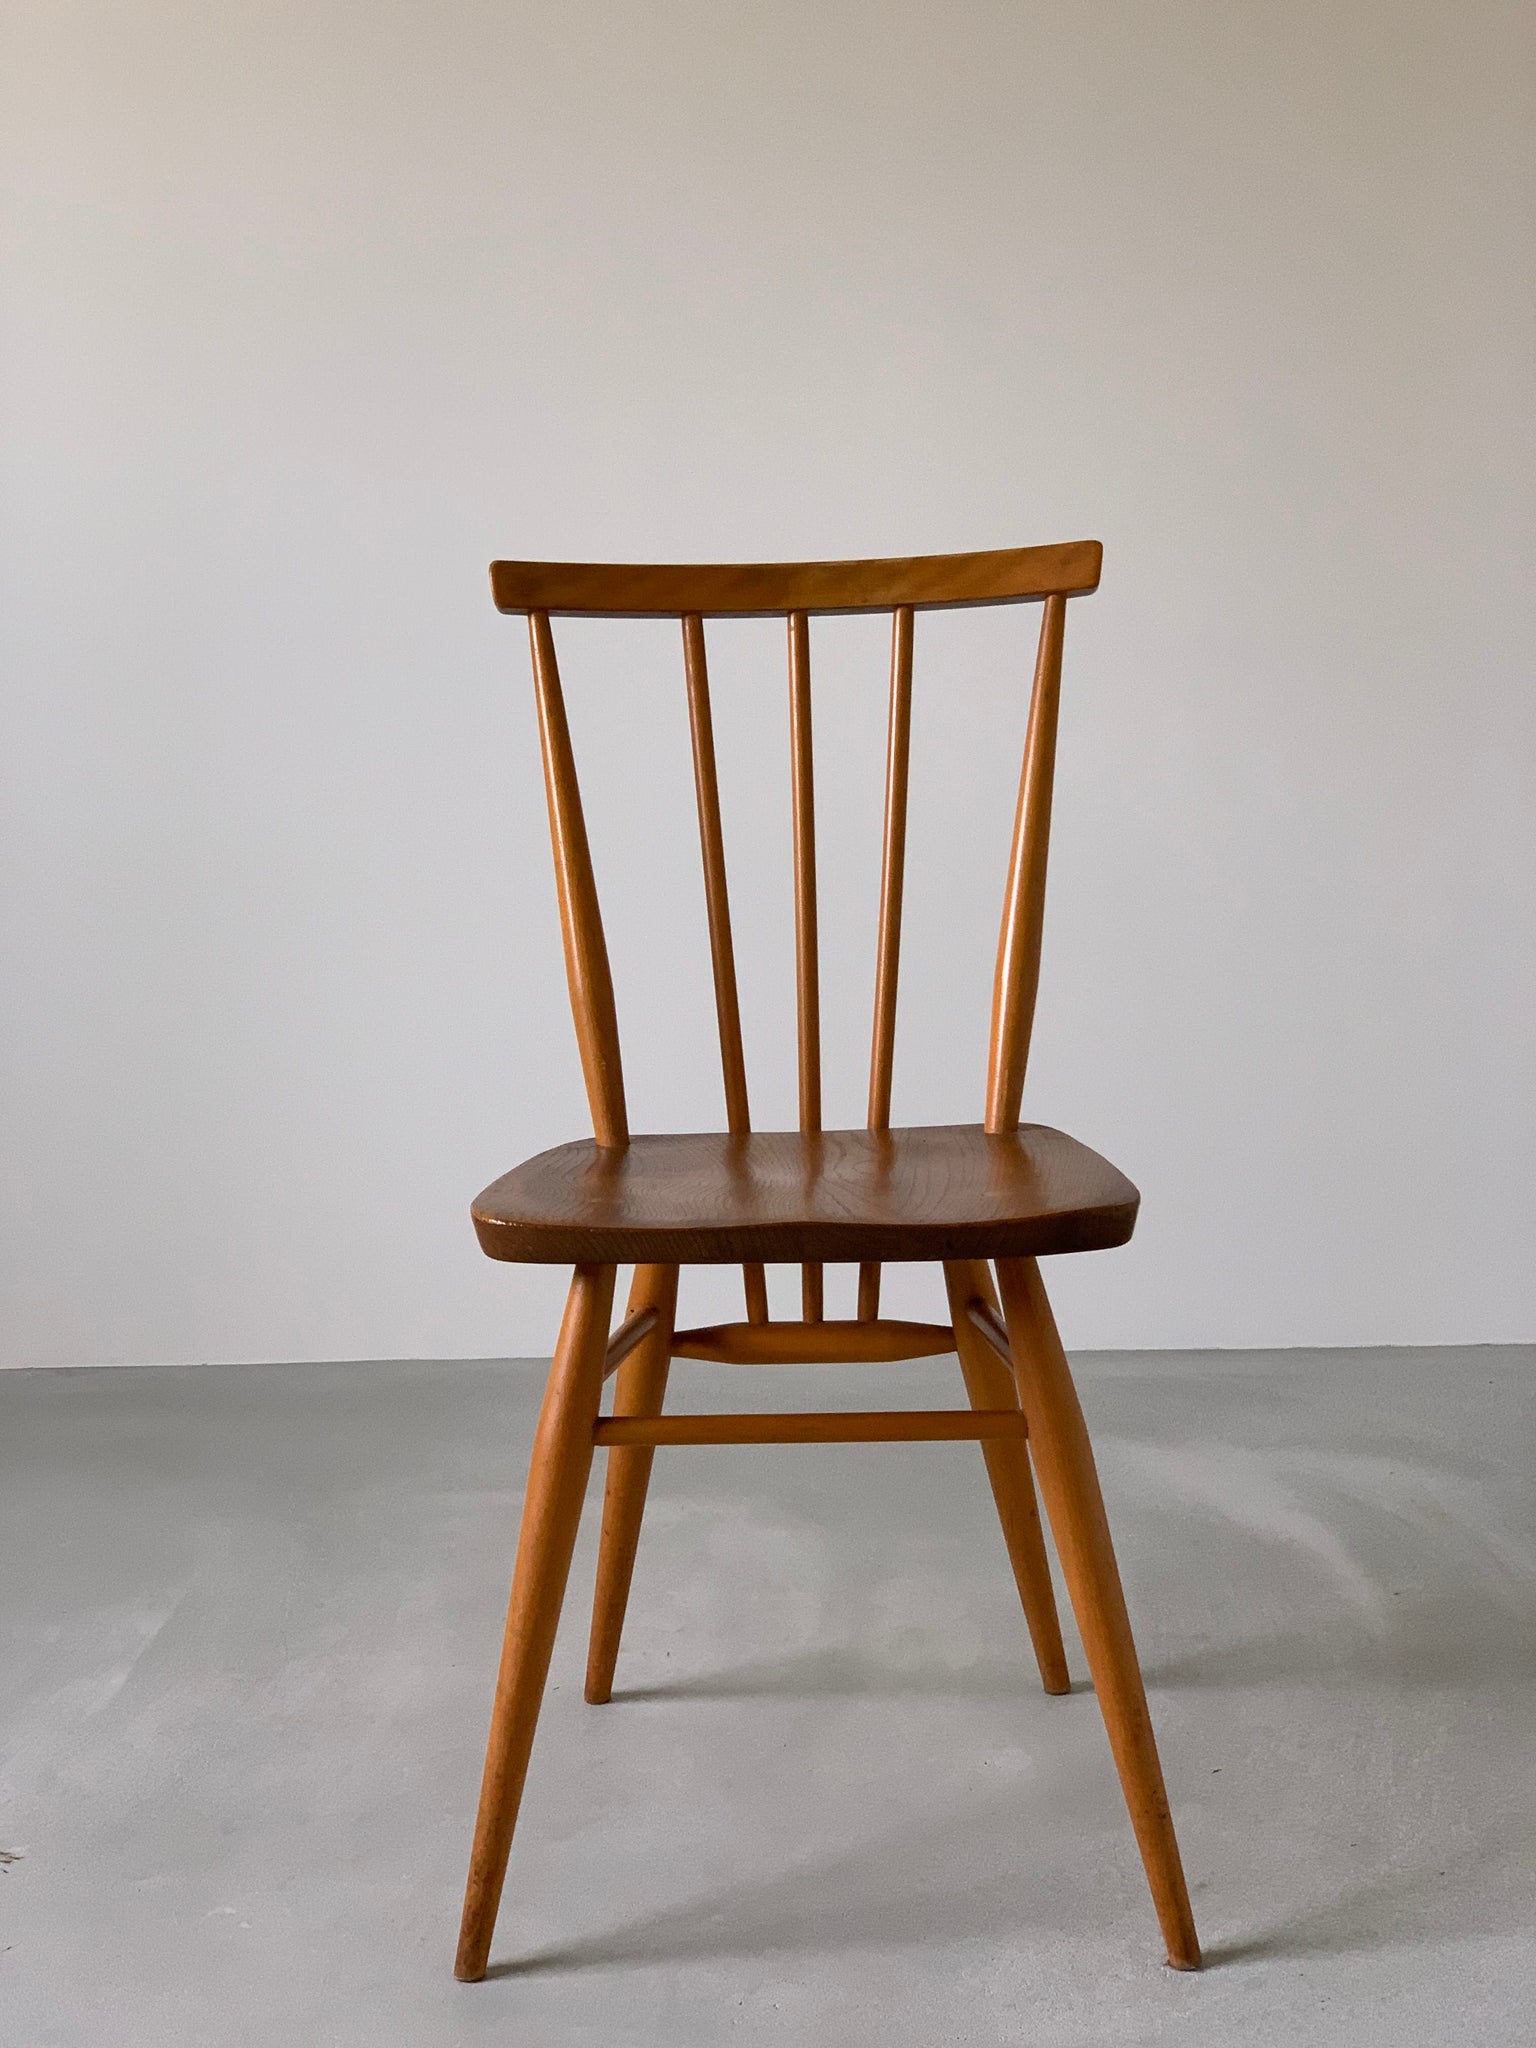 アーコール 'スティックバック' キッチン チェア / ercol 'stickback' kitchen chair '391' #0006